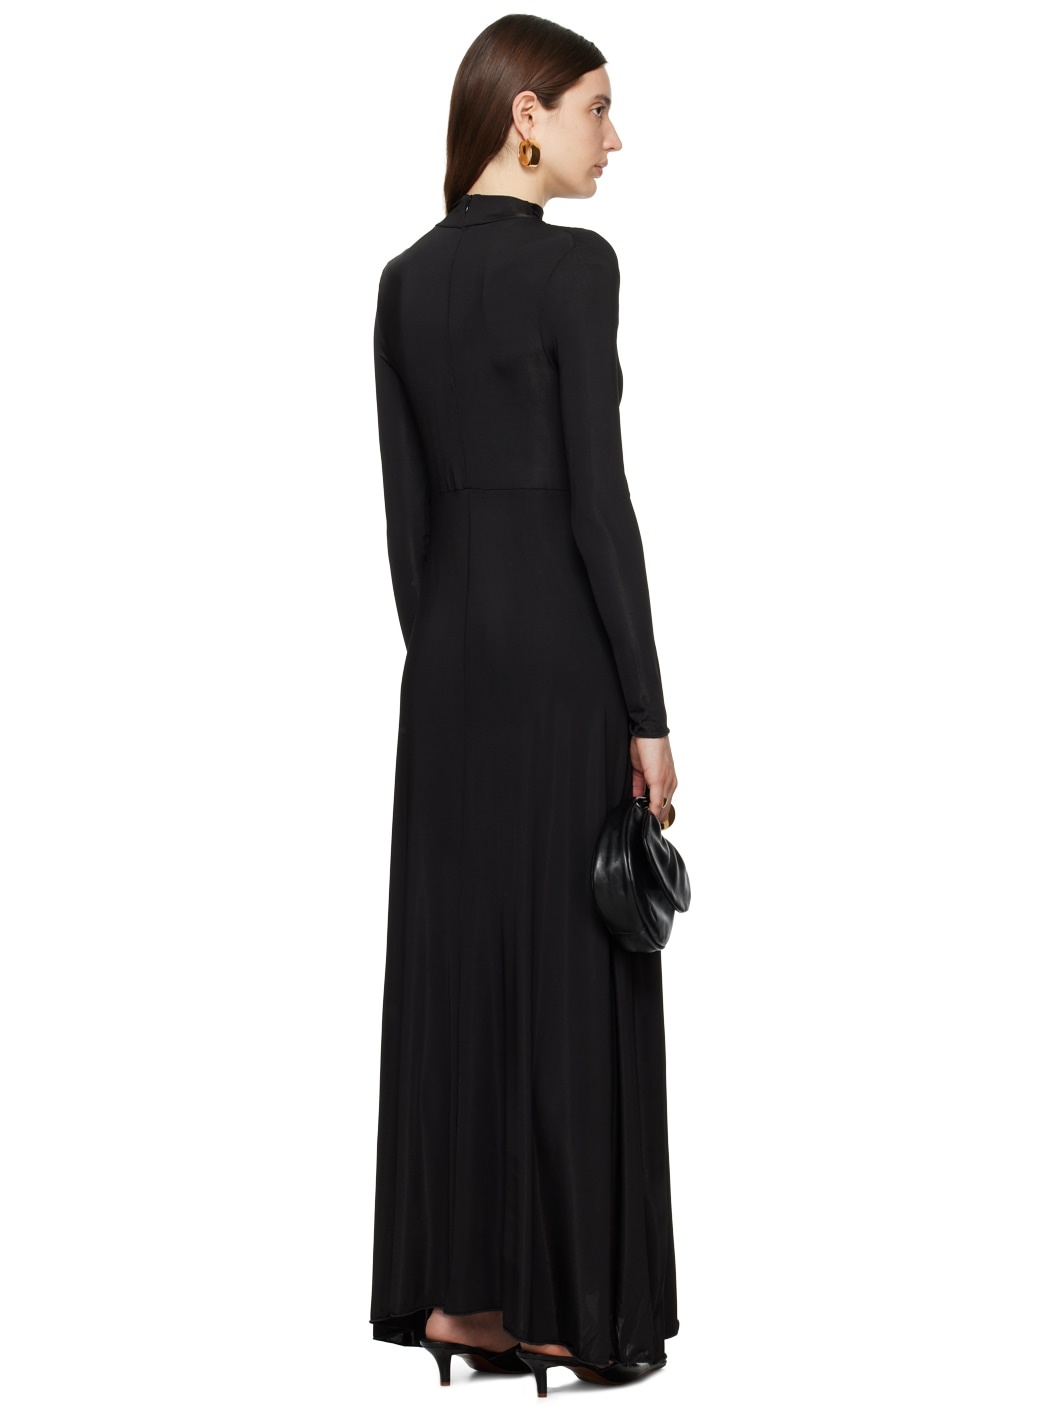 Black Asymmetric Maxi Dress - 3